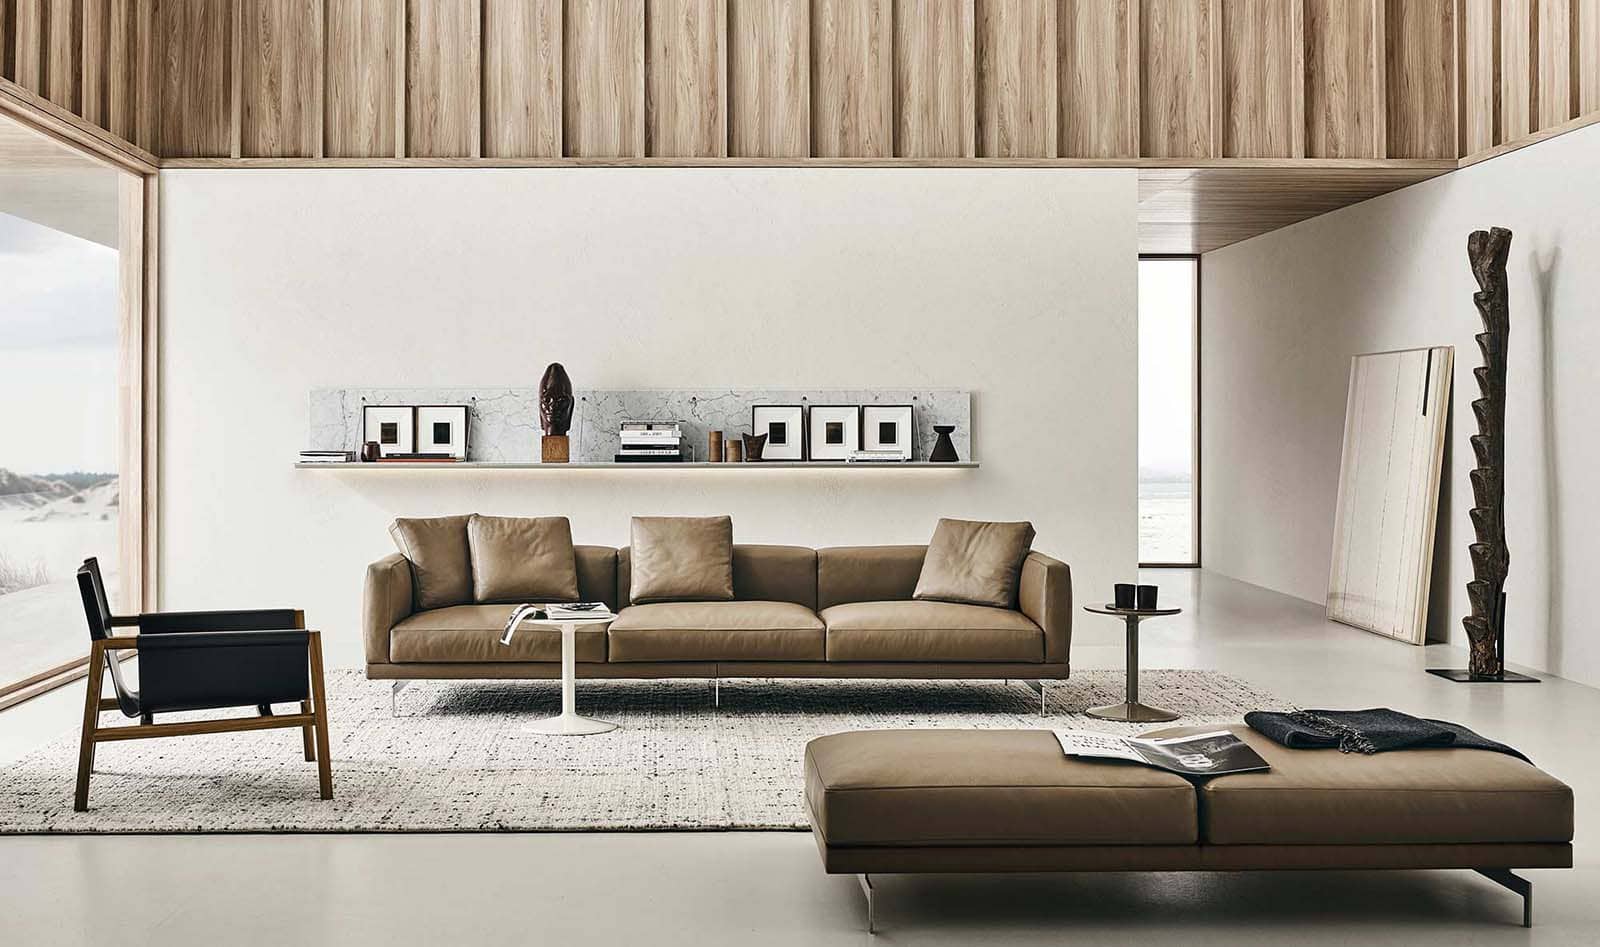 design sofa met chaise longue ontworpen door Piero Lissoni voor b&B italia. Italiaans design via noctum rotterdam